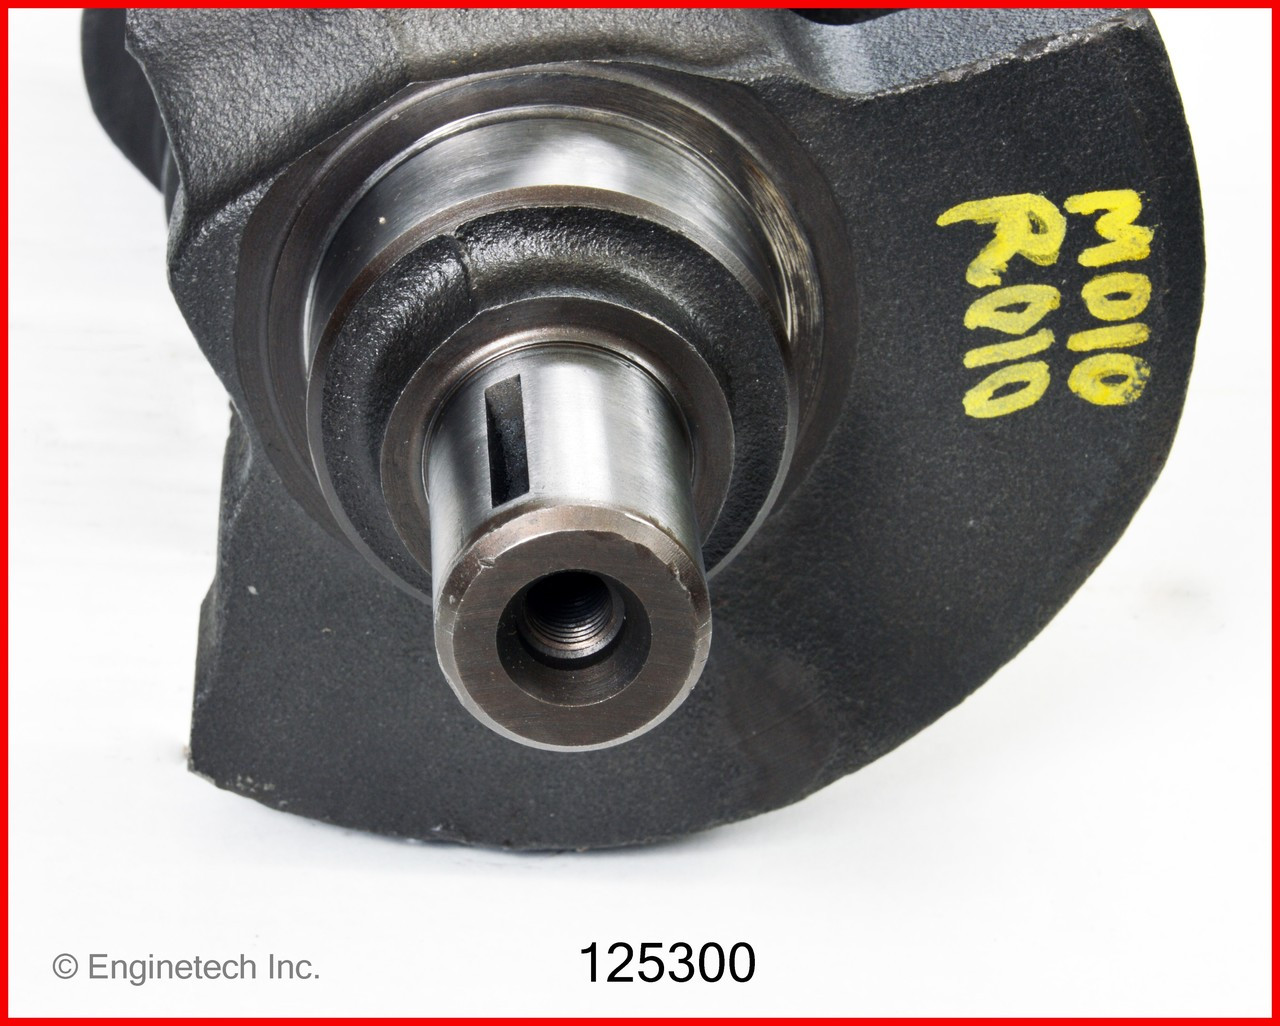 Crankshaft Kit - 1988 GMC C2500 4.3L (125300.I82)